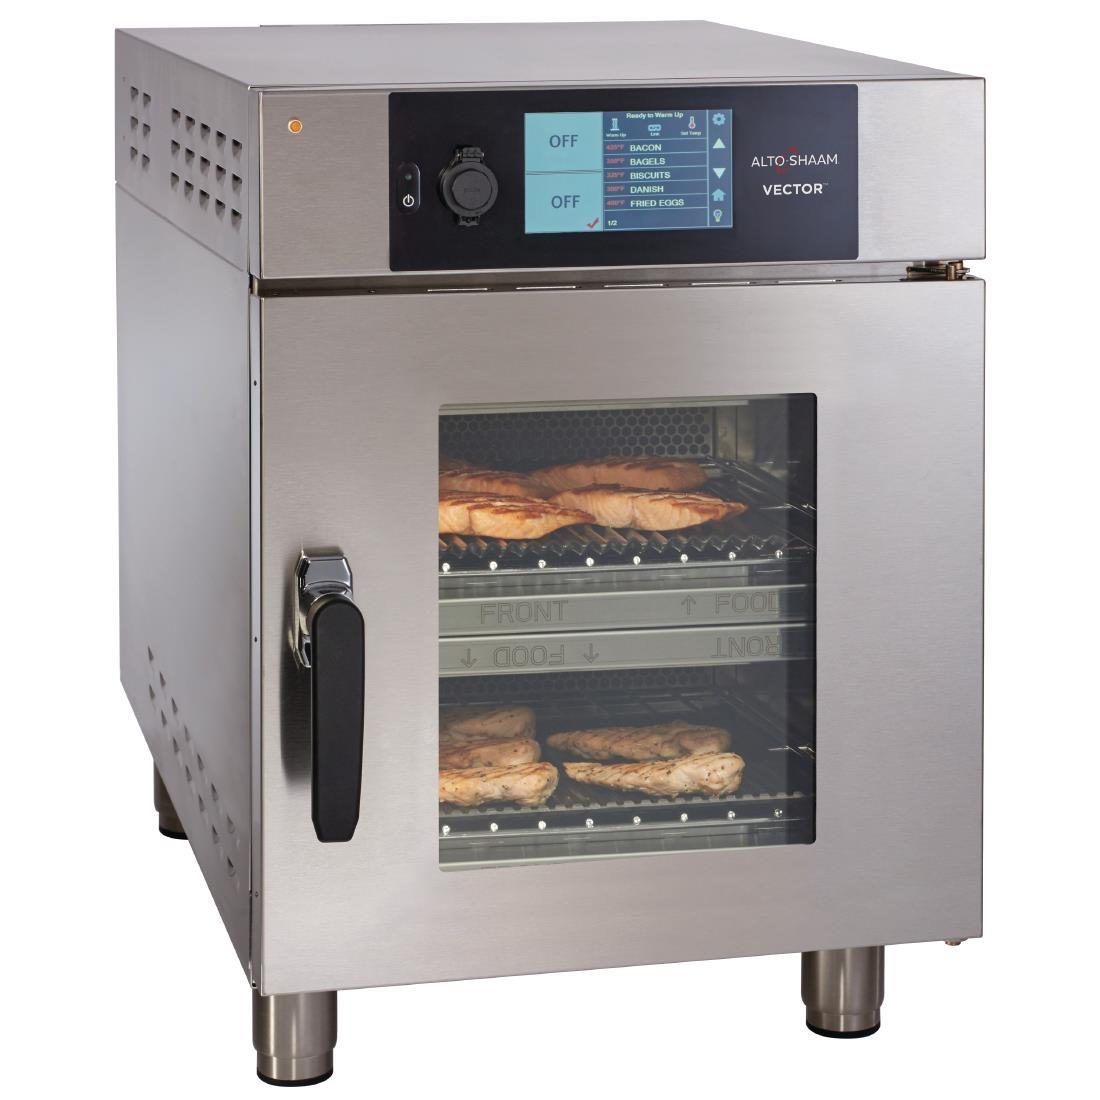 Alto-Shaam Vector VMC-H2H Multi-Cook Oven - DE955  - 2